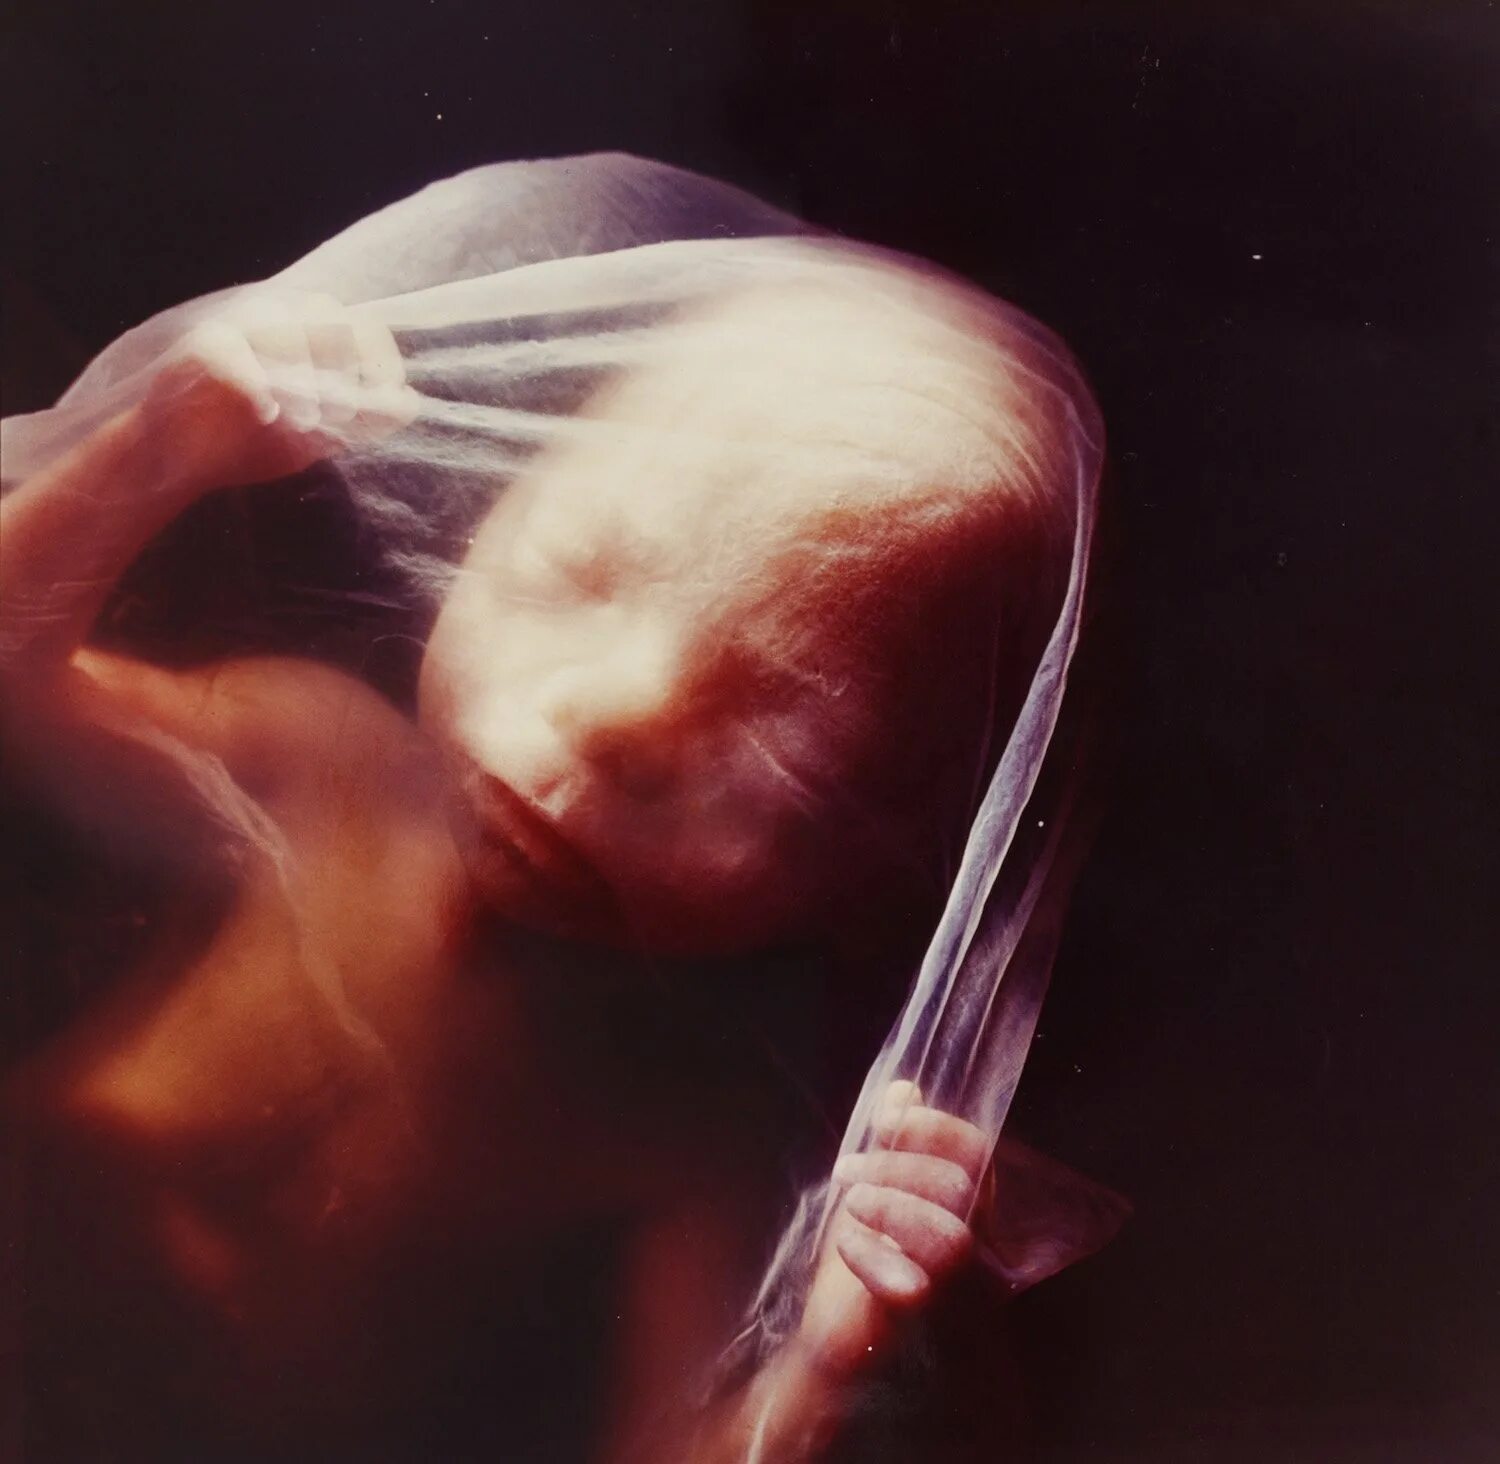 Эмбрион Леннарт Нильсон. Эмбрион 18 недель Леннарт Нильссон. "Зародыш, 18 недель", Леннарт Нильсон, 1965..